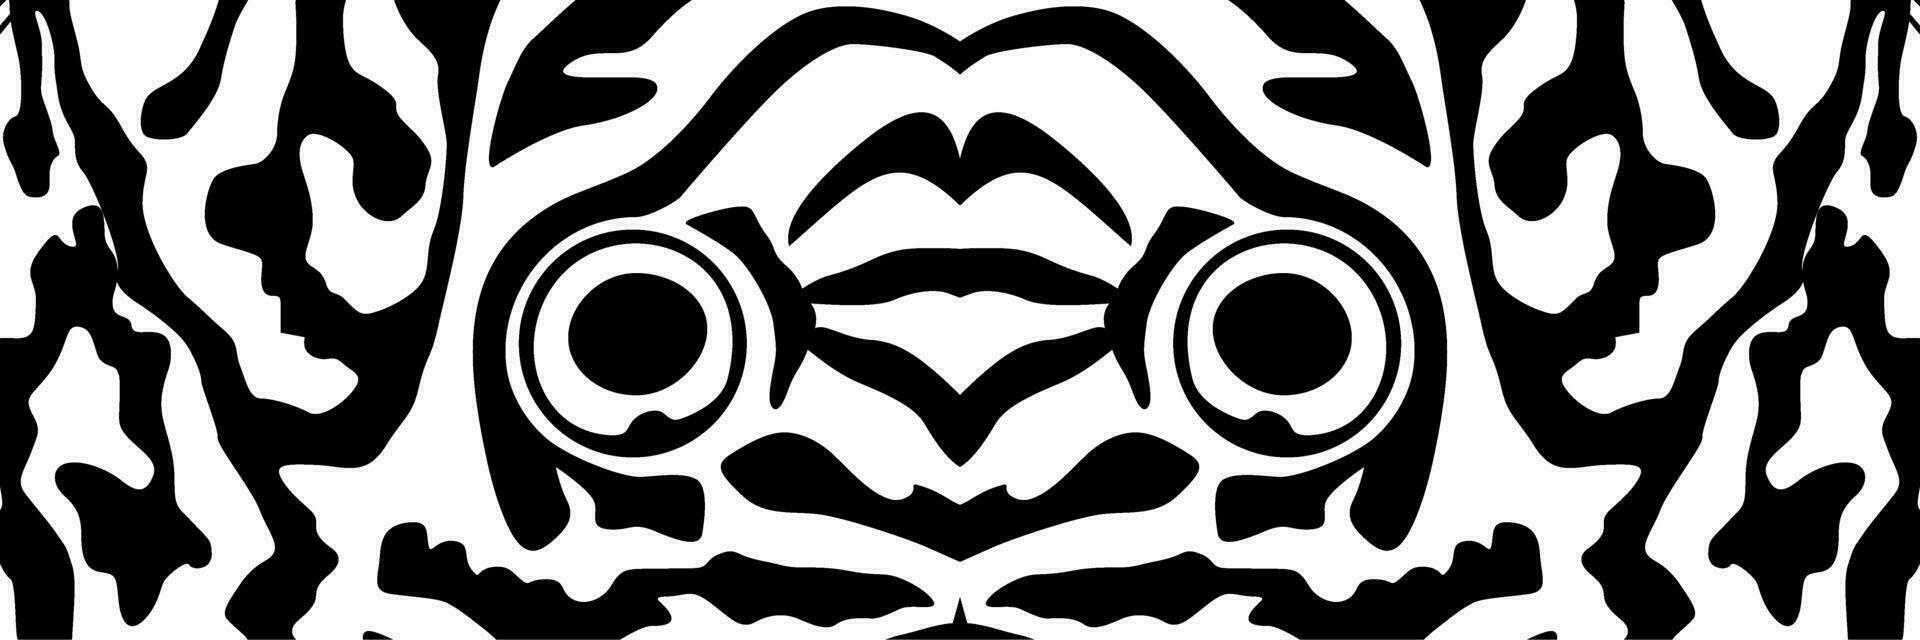 artístico motivos modelo inspirado por Symphysodon o disco pescado piel, para decoración, florido, fondo, sitio web, fondo de pantalla, moda, interior, cubrir, animal imprimir, o gráfico diseño elemento vector